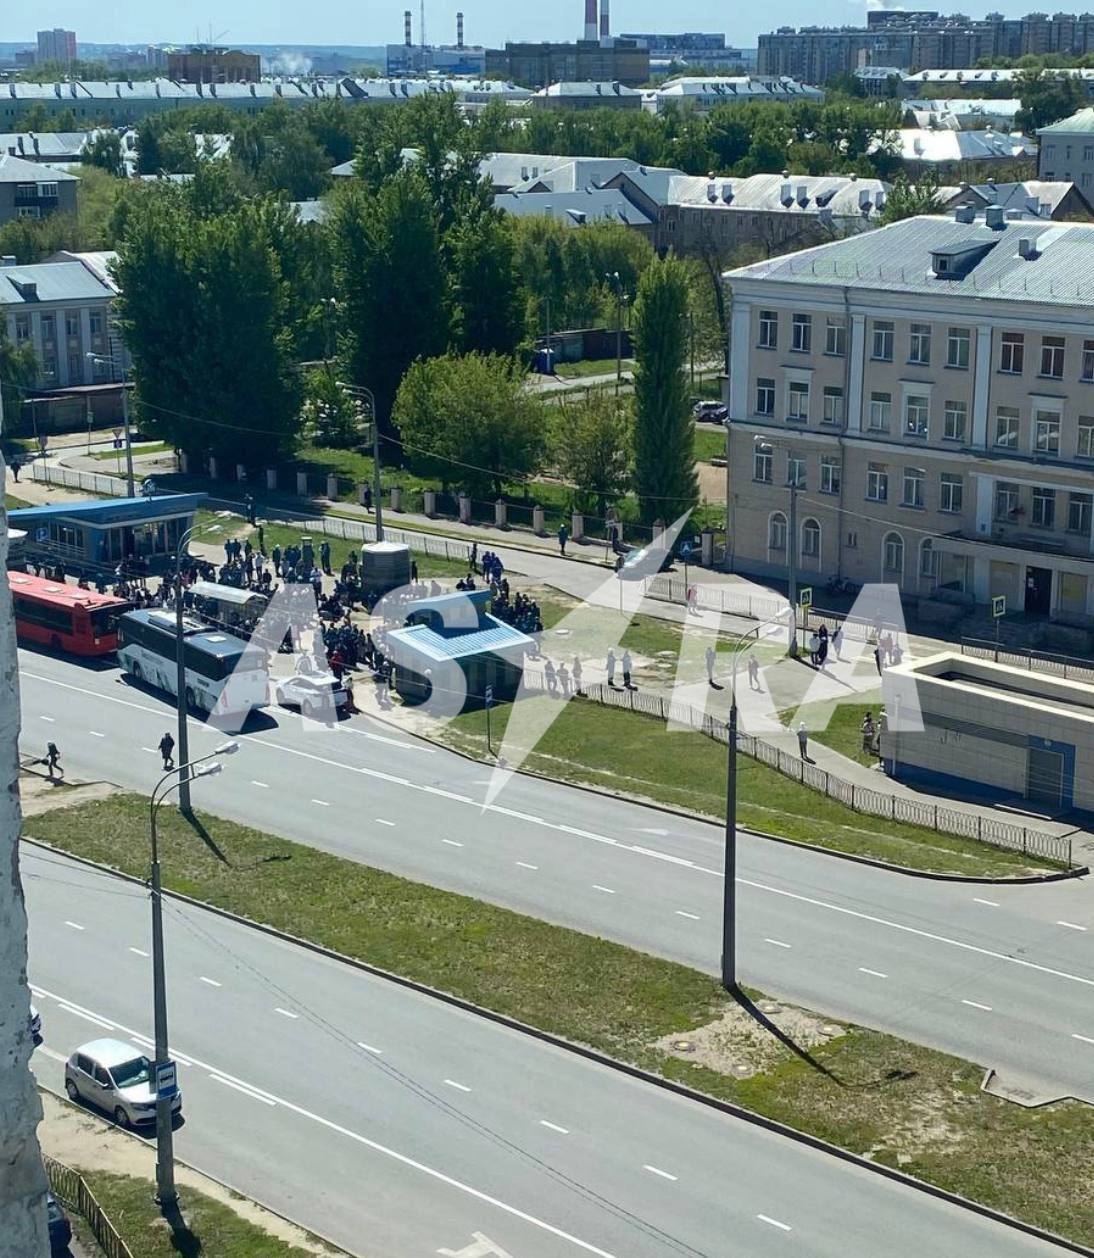 Дроны достигли Казани и Нижнекамска: в ГУР раскрыли детали поражения объектов в Татарстане